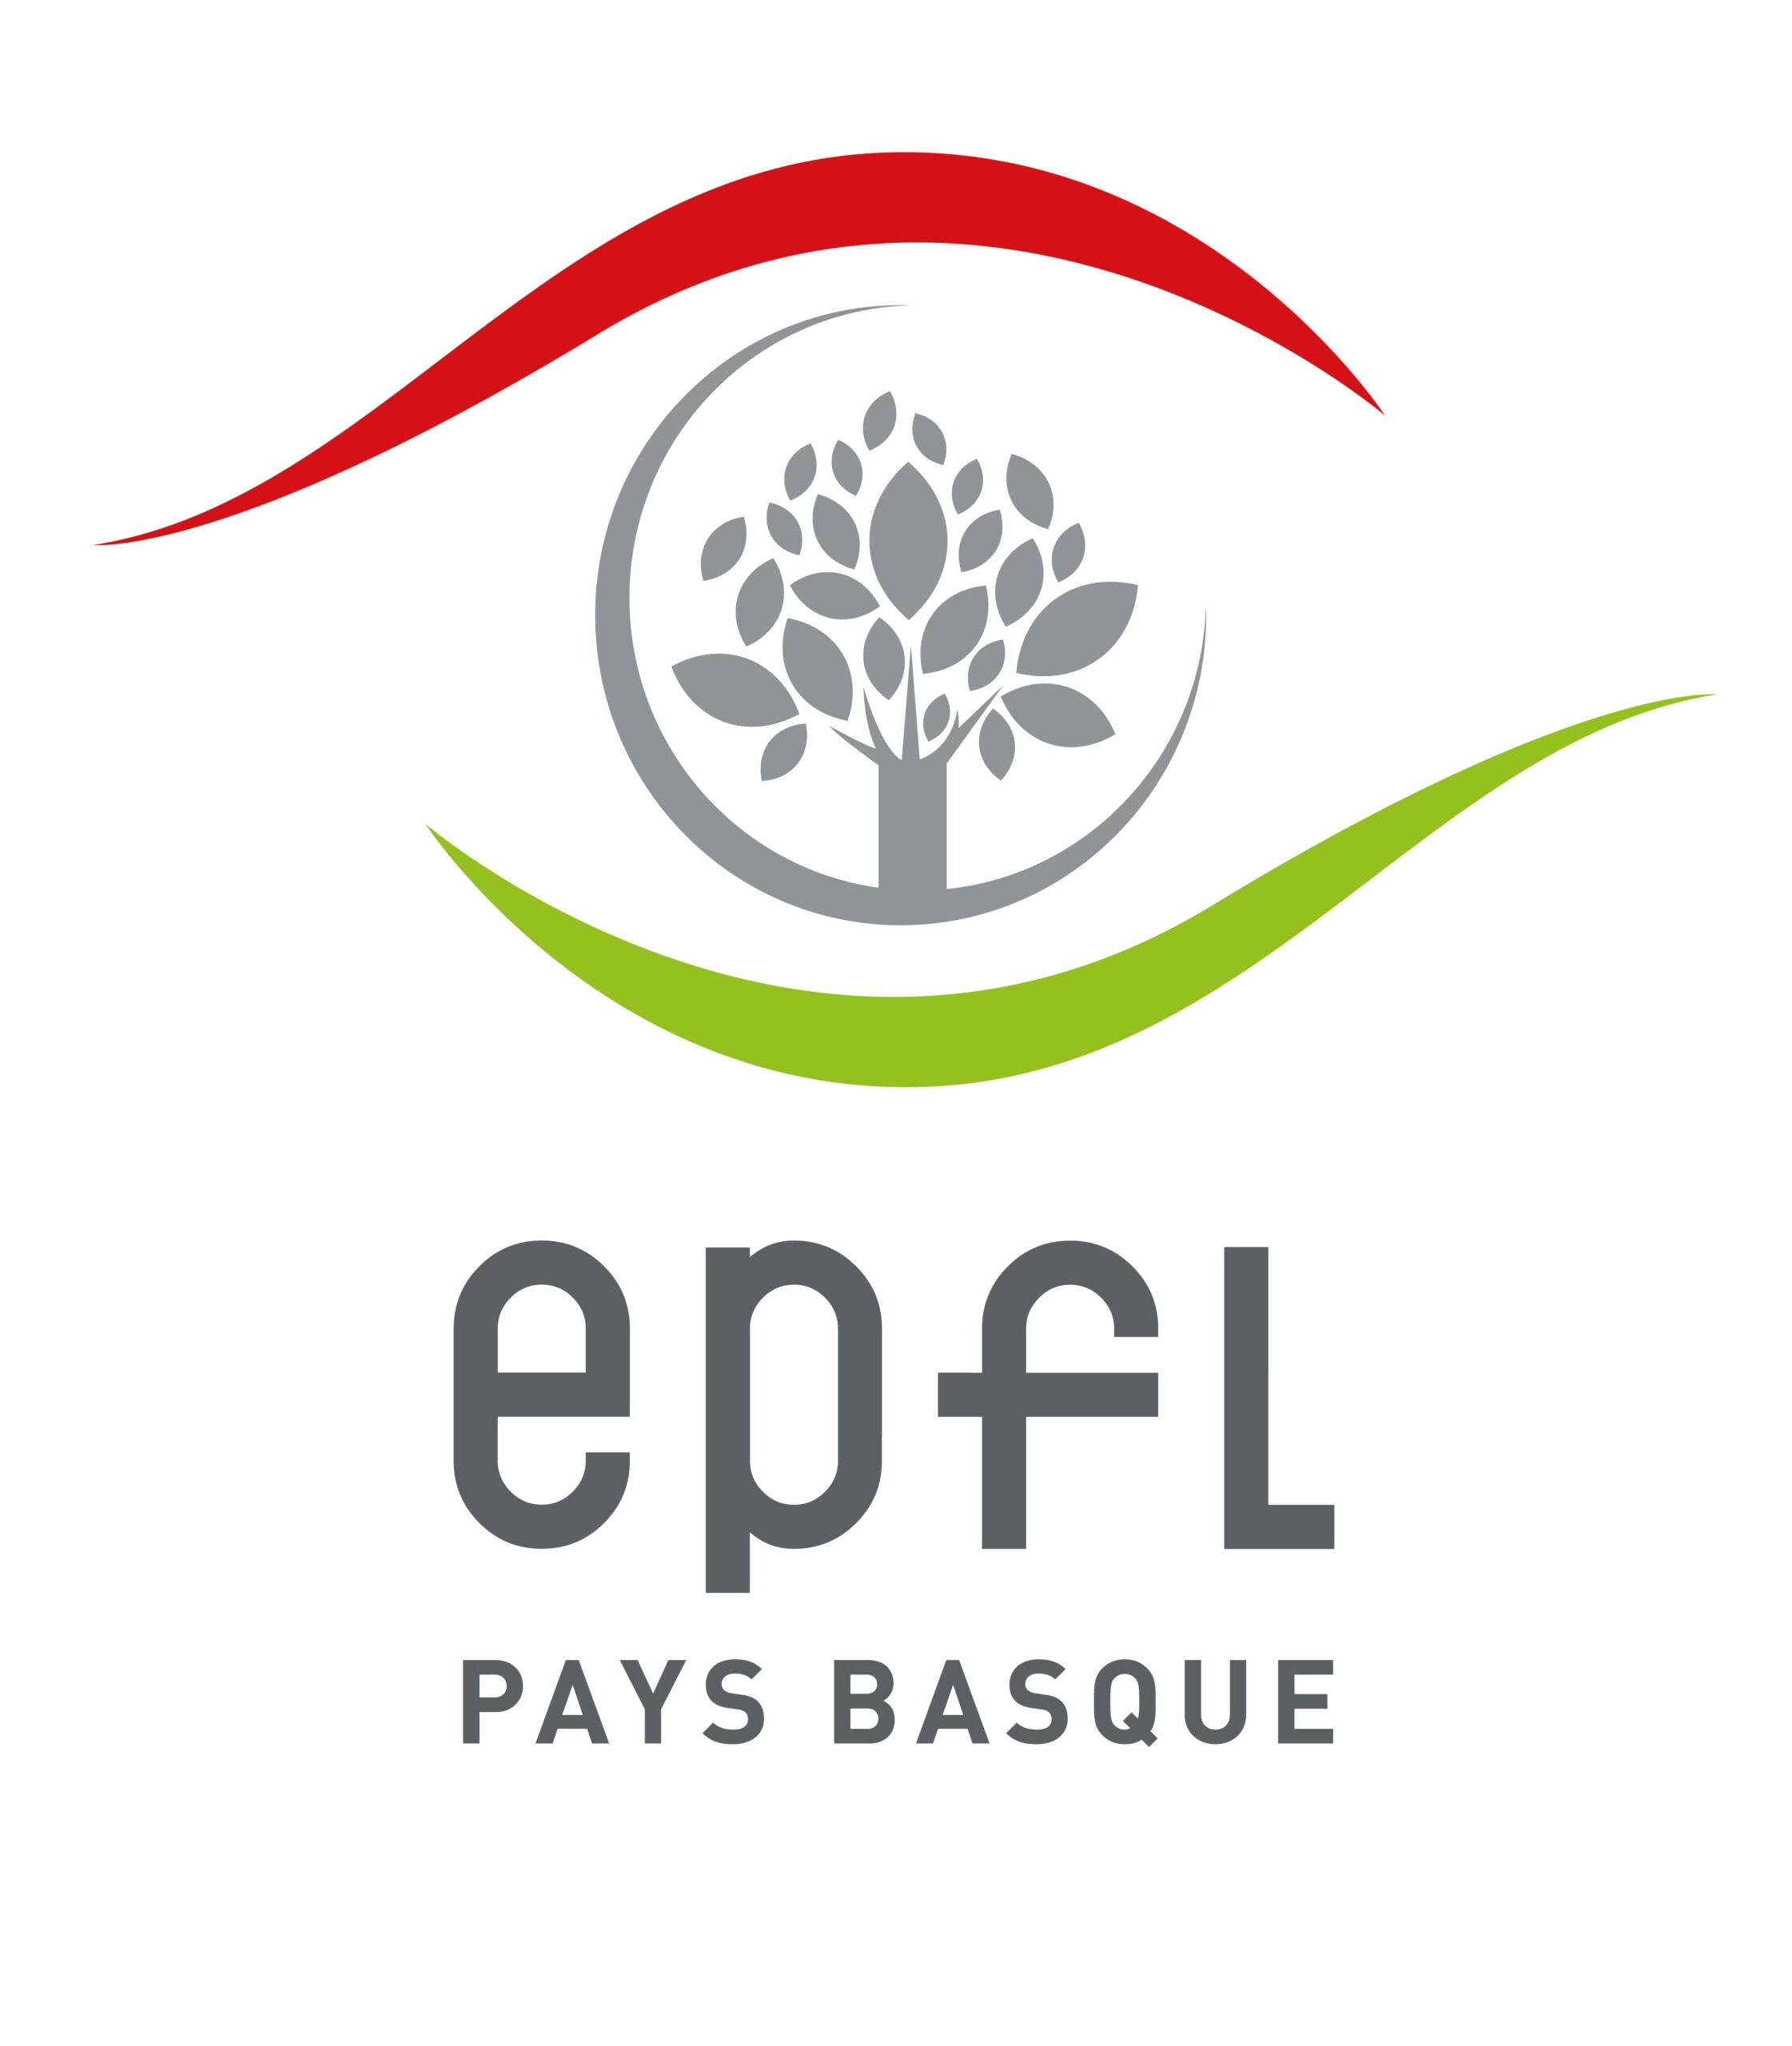 EPFL Pays Basque